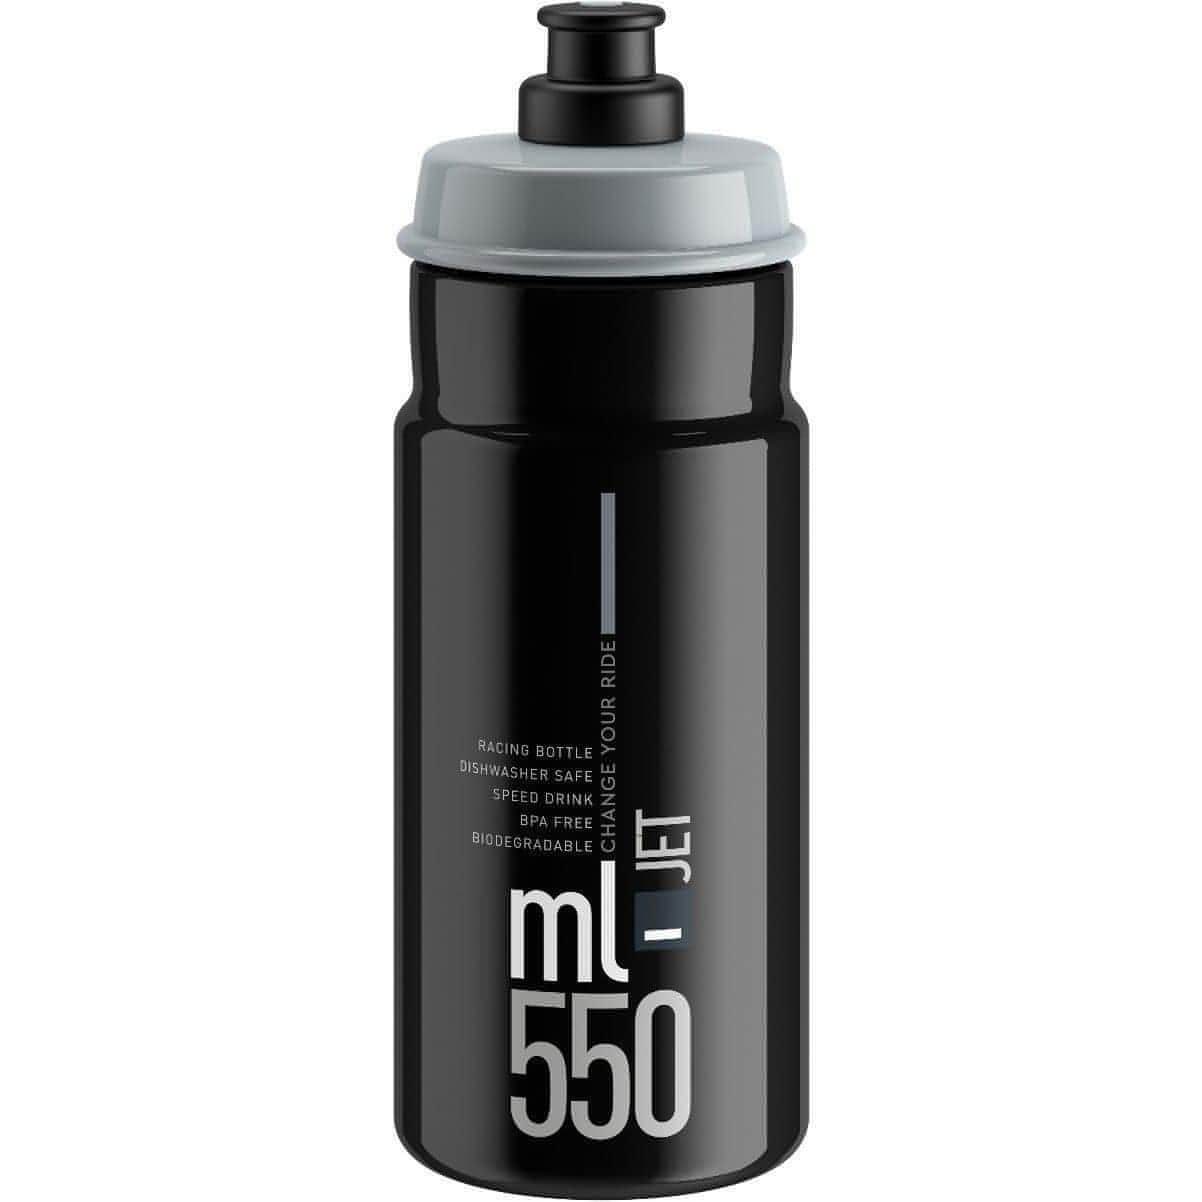 Elite Jet Biodegradable 550ml Water Bottle - Black 8020775036037 - Start Fitness